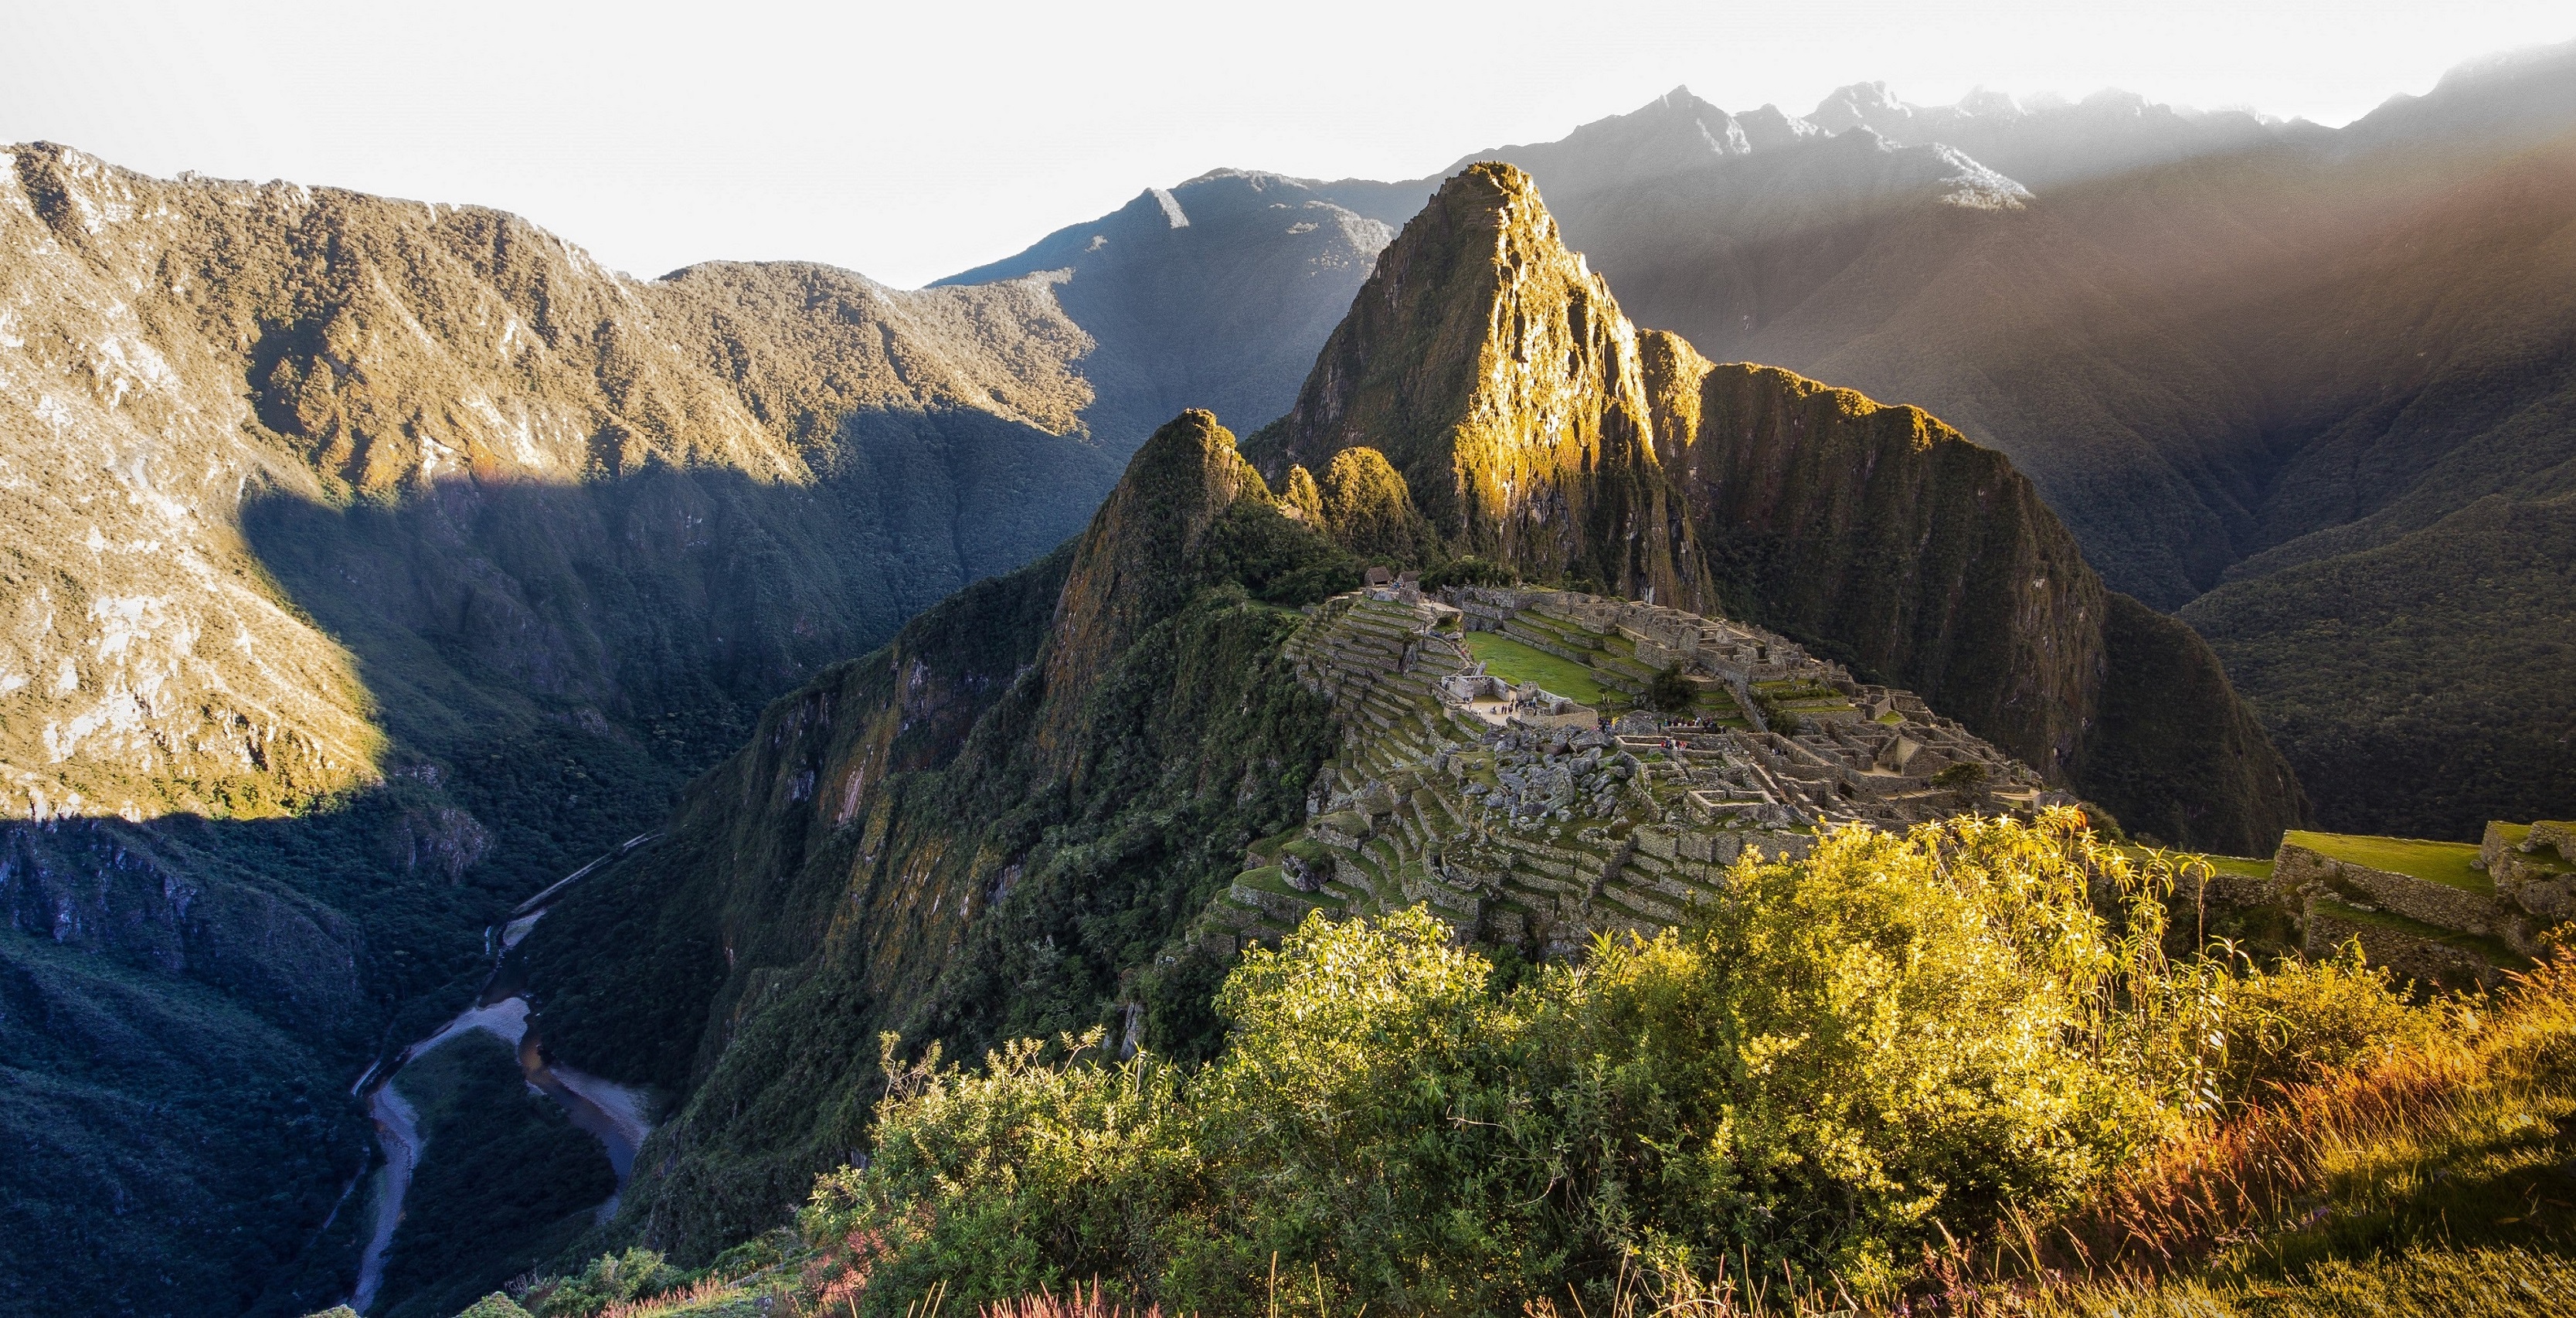 A photo of Machu Picchu in Peru.